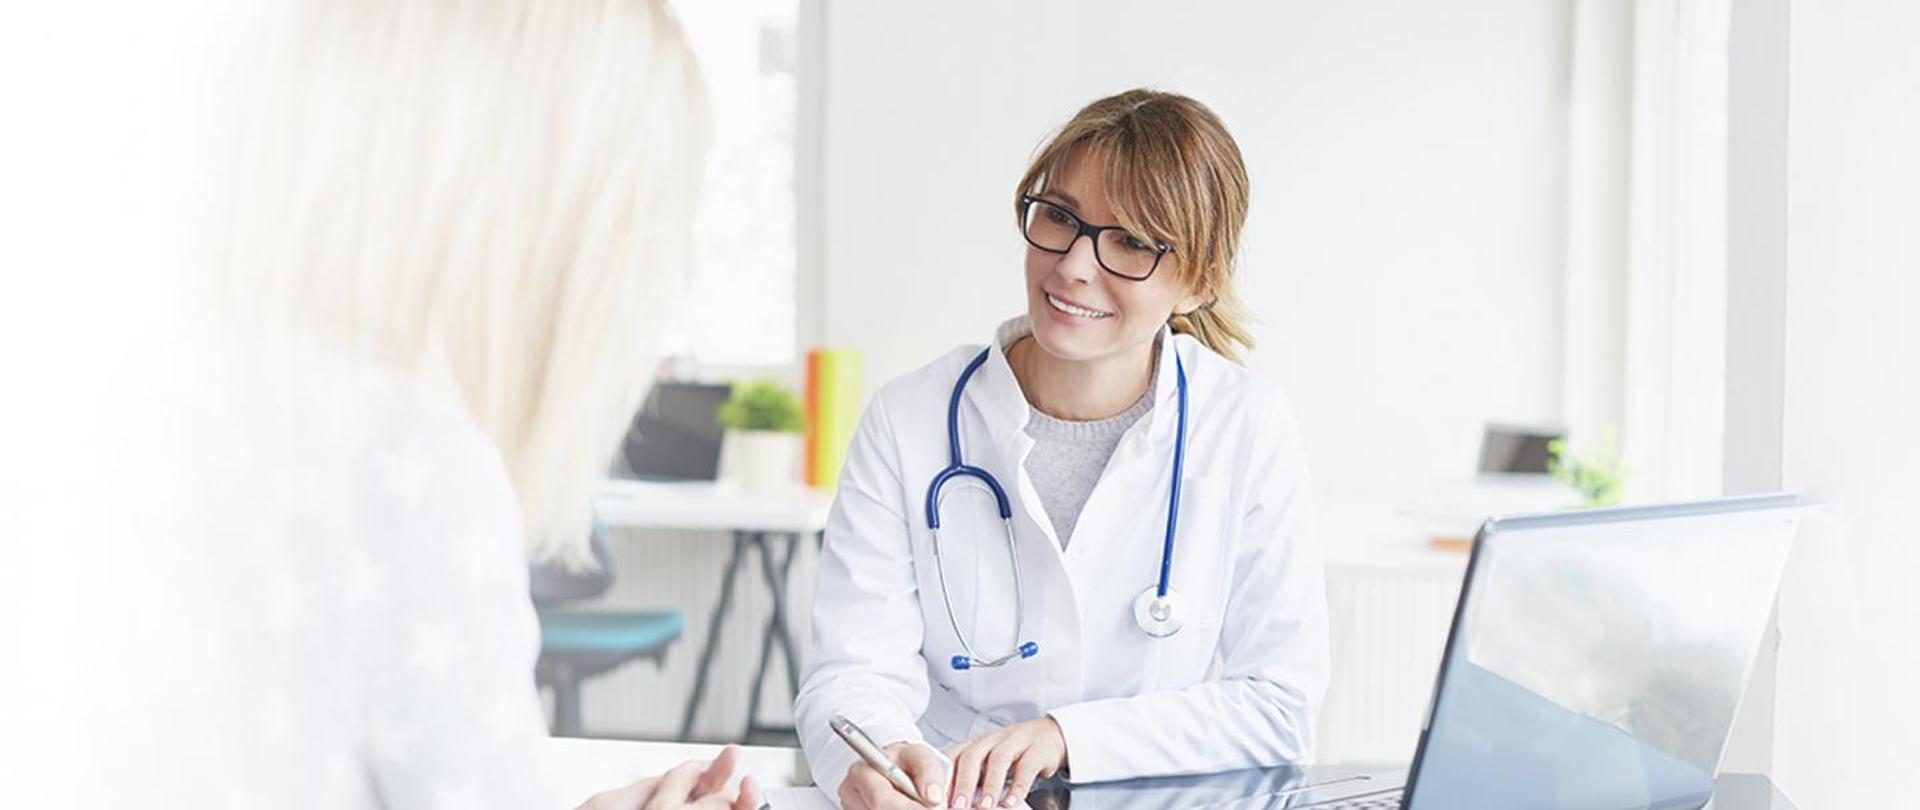 kobieta w białych fartuchu, z niebieskim stetoskopem na szyi, lekarz, rozmawia z pacjentem przy biurku, pacjentem jest kobieta